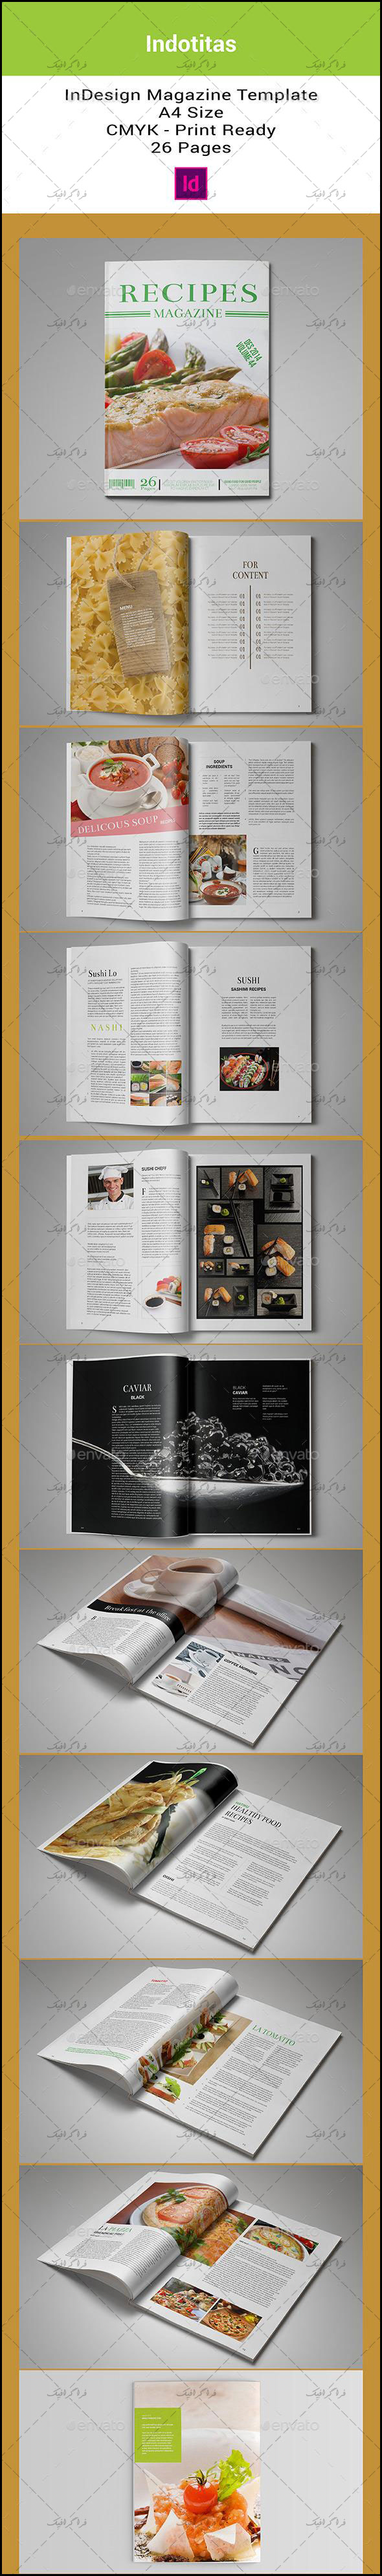 دانلود فایل لایه باز ایندیزاین مجله آشپزی